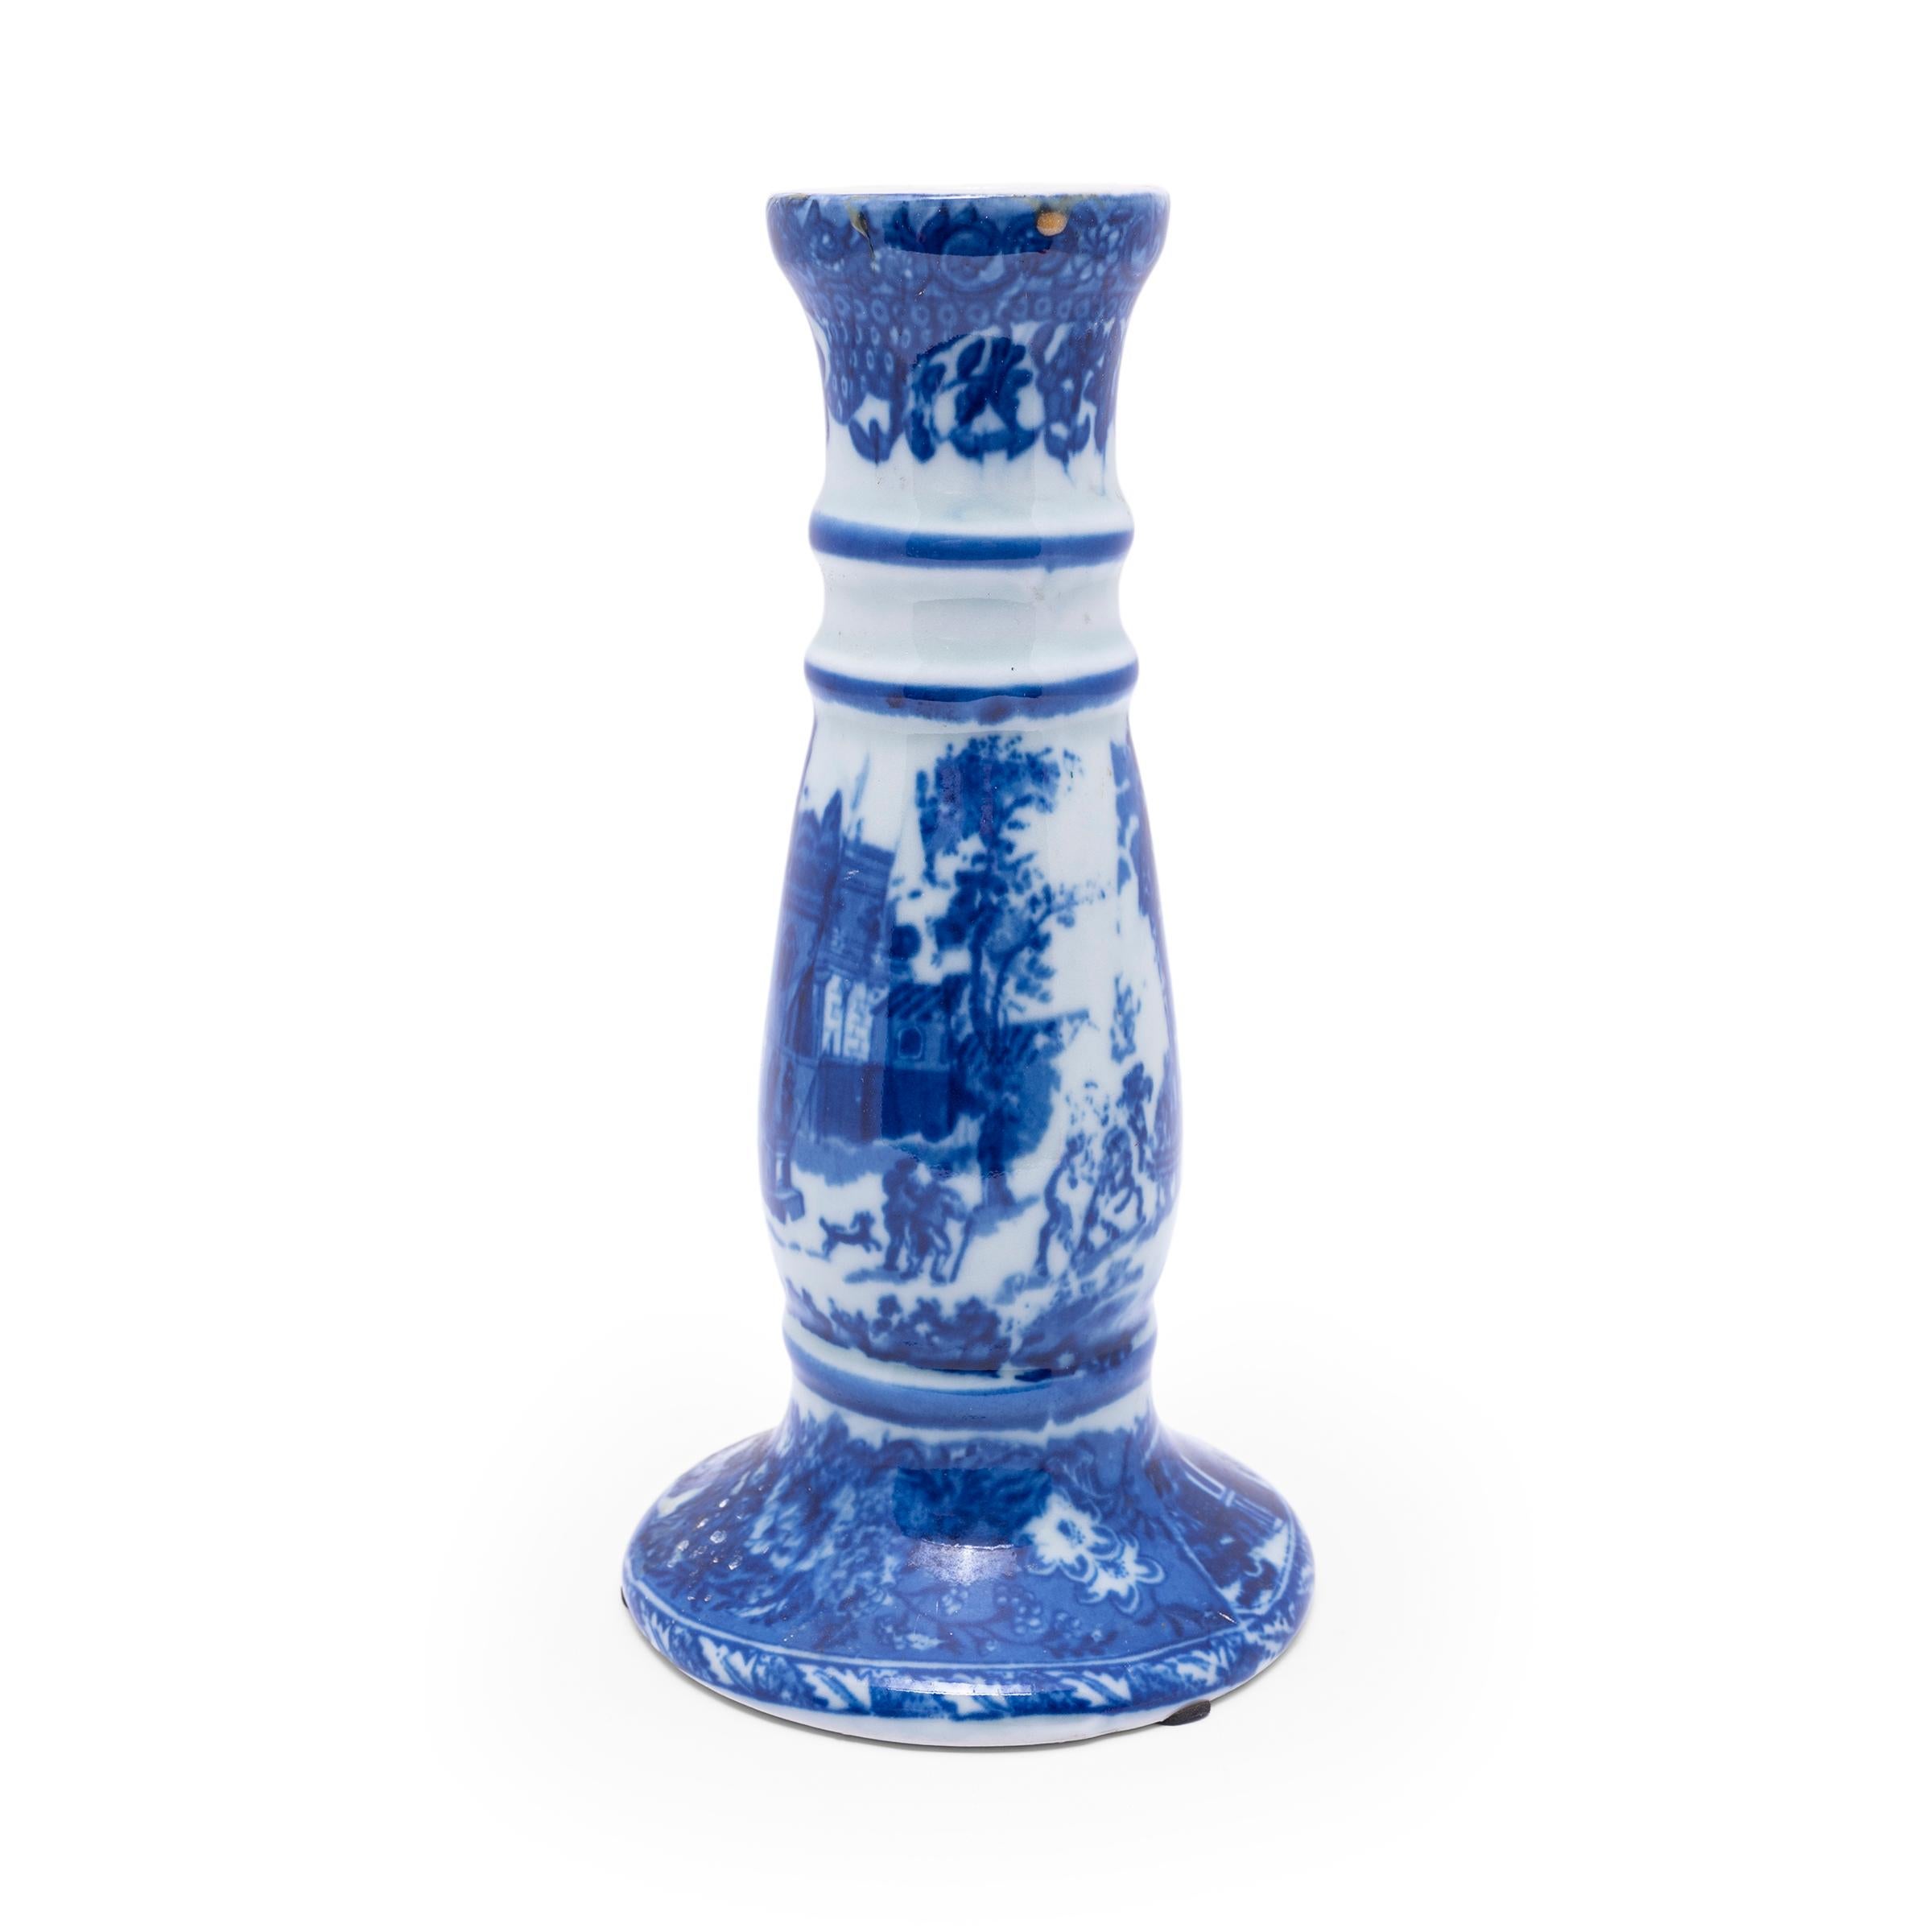 Ce vase vintage en porcelaine a la forme d'un grand bougeoir et est décoré d'un motif de Chinoiserie bleu et blanc représentant un paysage idyllique sur la place d'une ville. Le design de la vaisselle à transfert recrée la vaisselle en pierre de fer